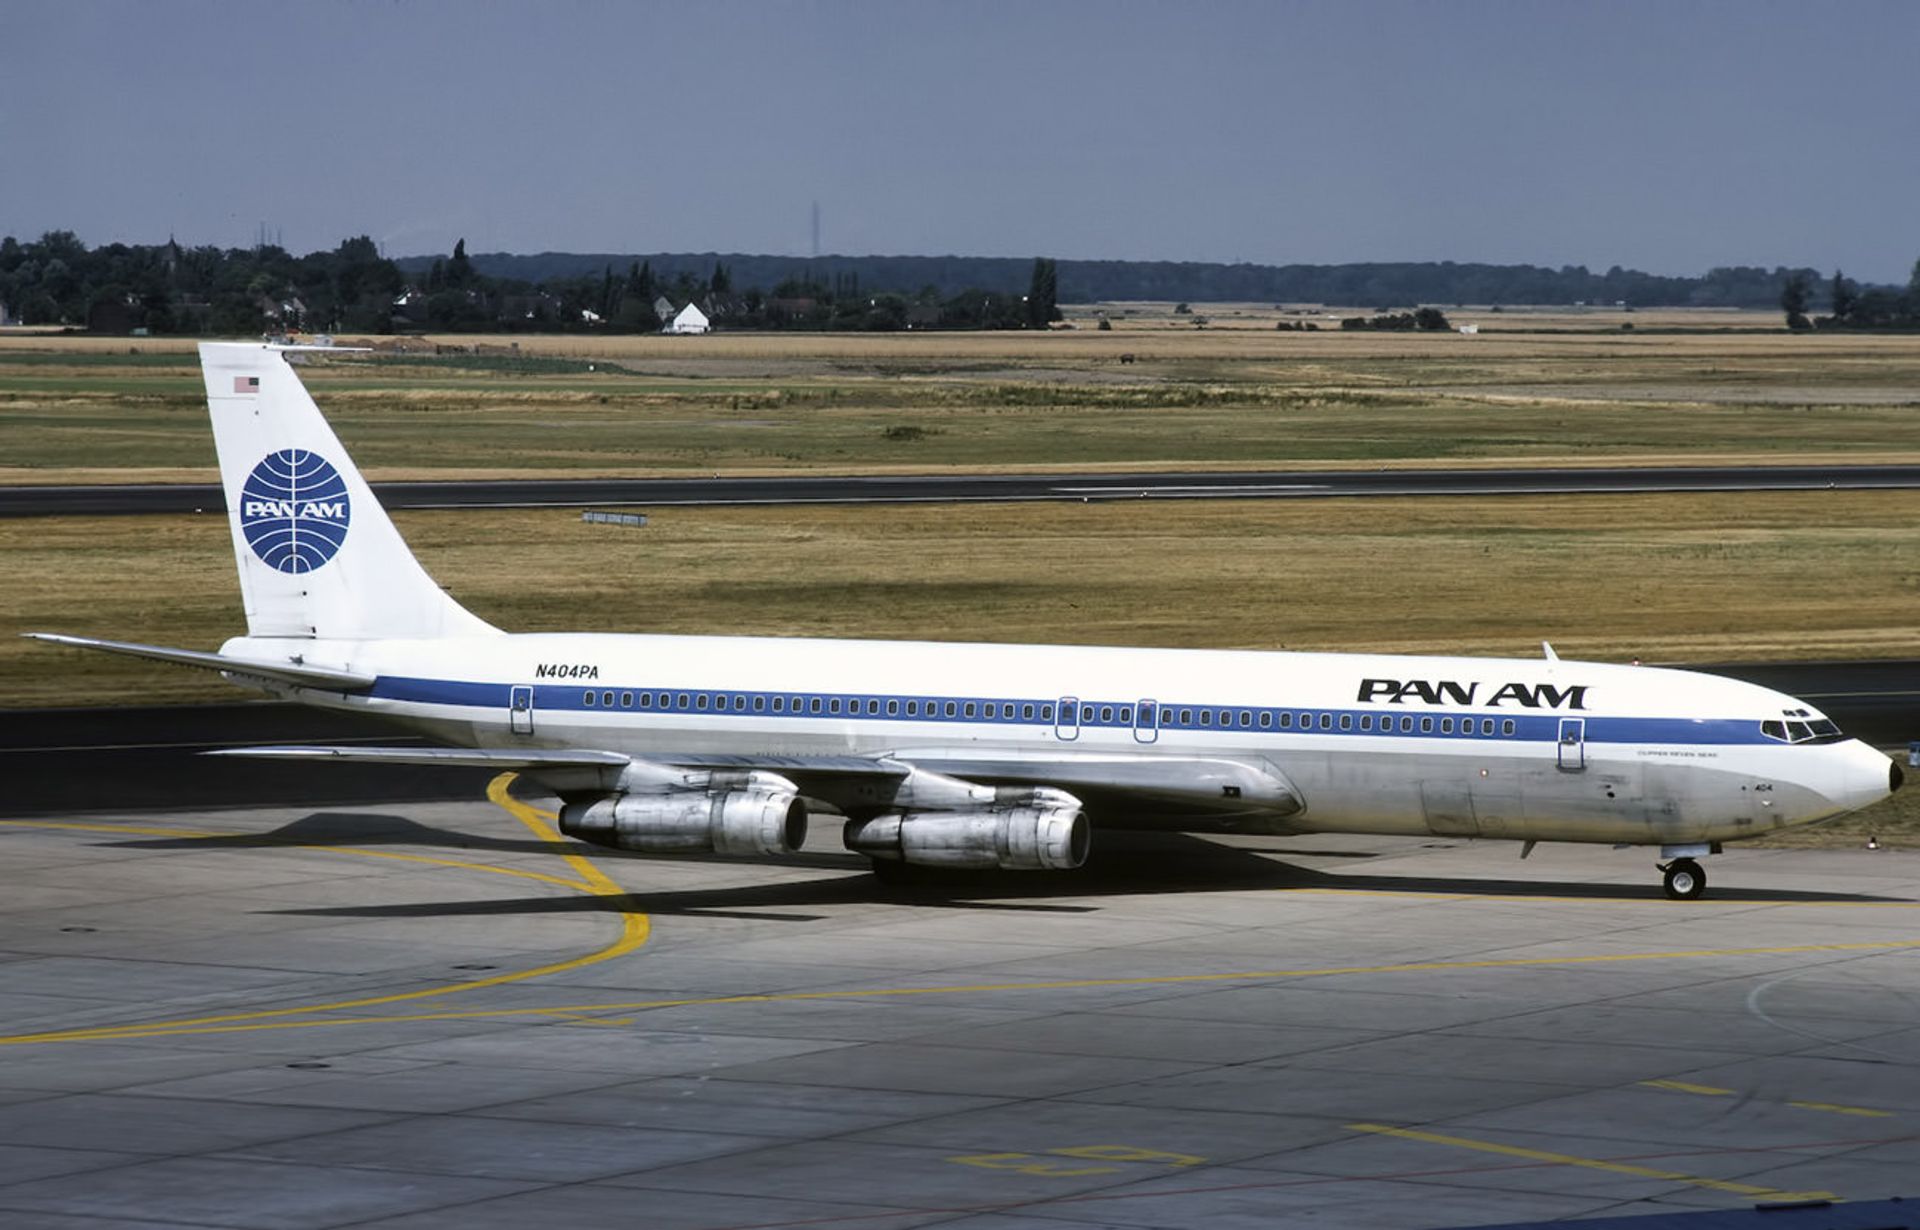 مرجع متخصصين ايران بوئينگ ۷۰۷ پان امريكن / Pan Am Boeing 707